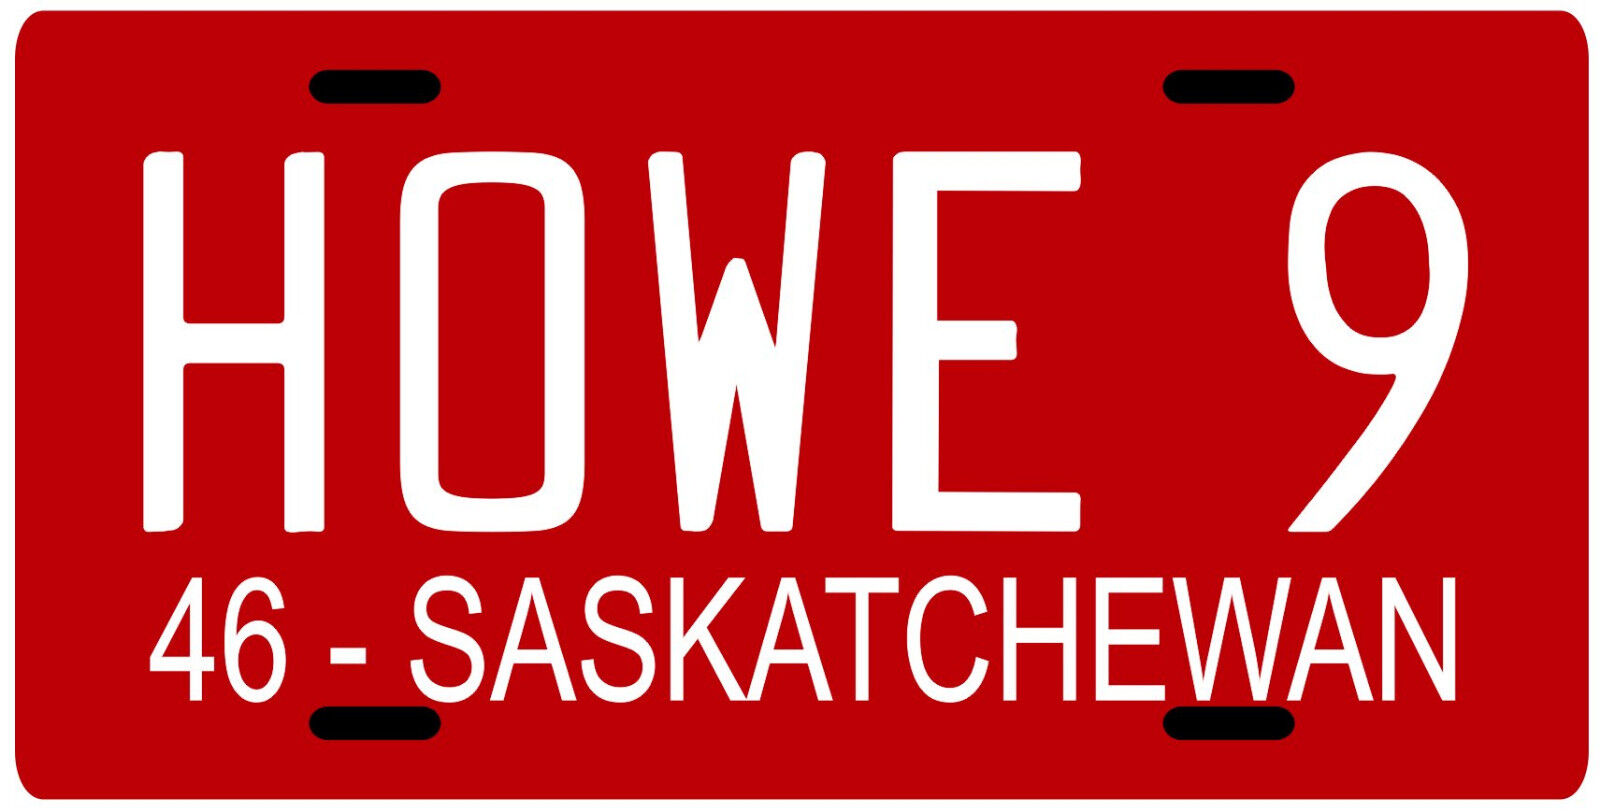 Gordie Howe 1946 Saskatchewan License plate